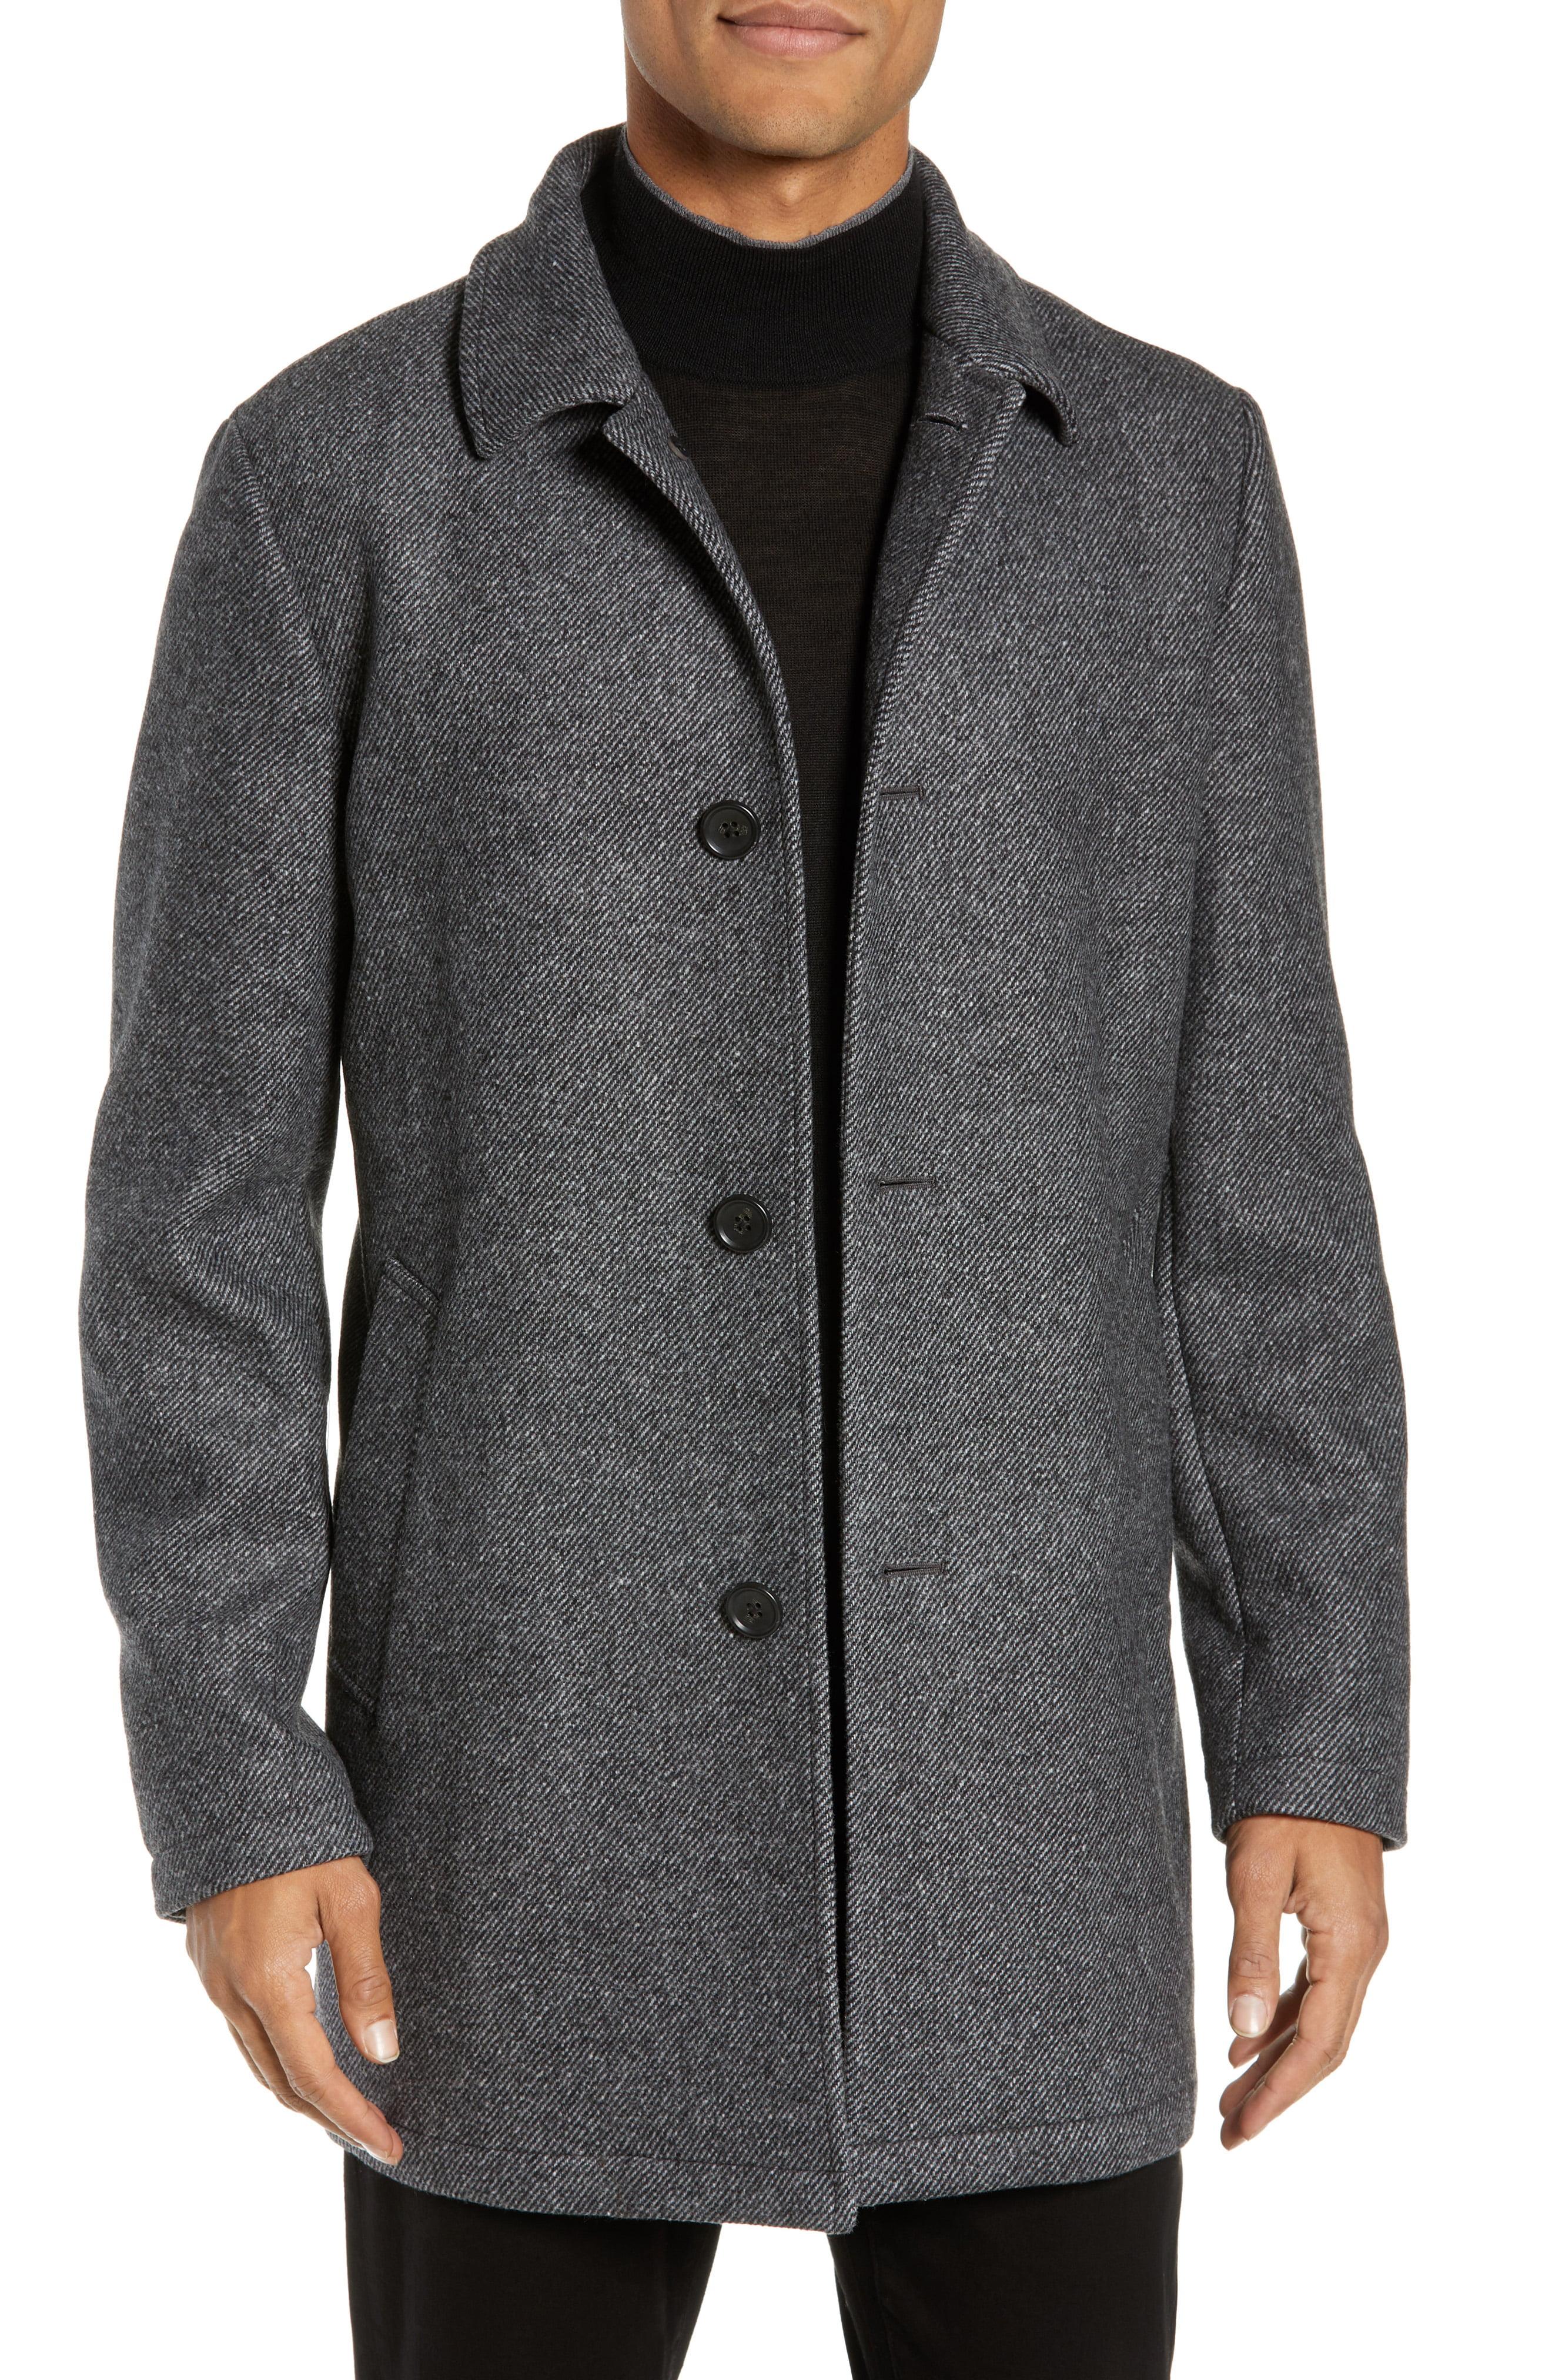 Mens Wool Car Coat Slim Fit / Men's Jacket Wool Slim Fit Outwear Warm ...